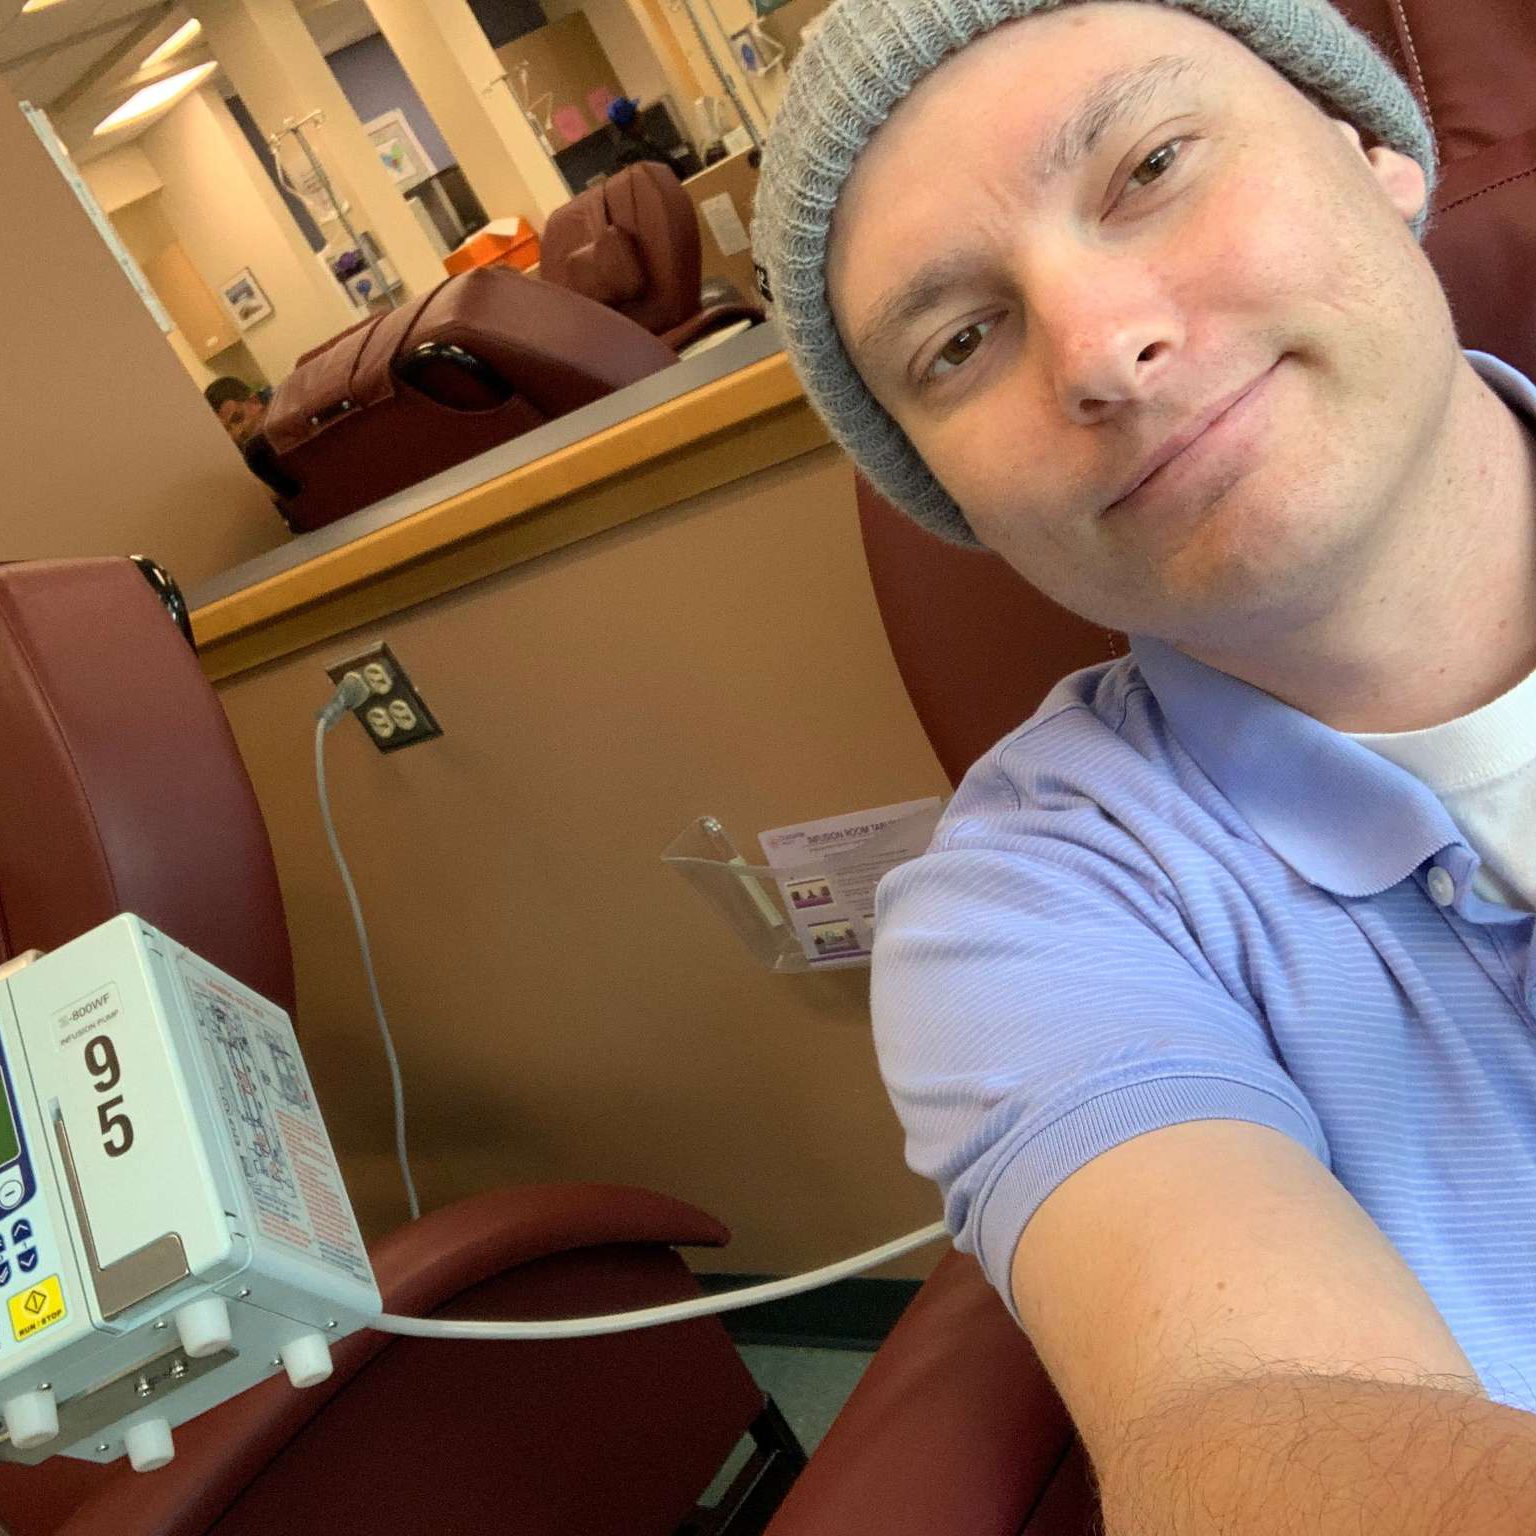 Steven beginning chemotherapy